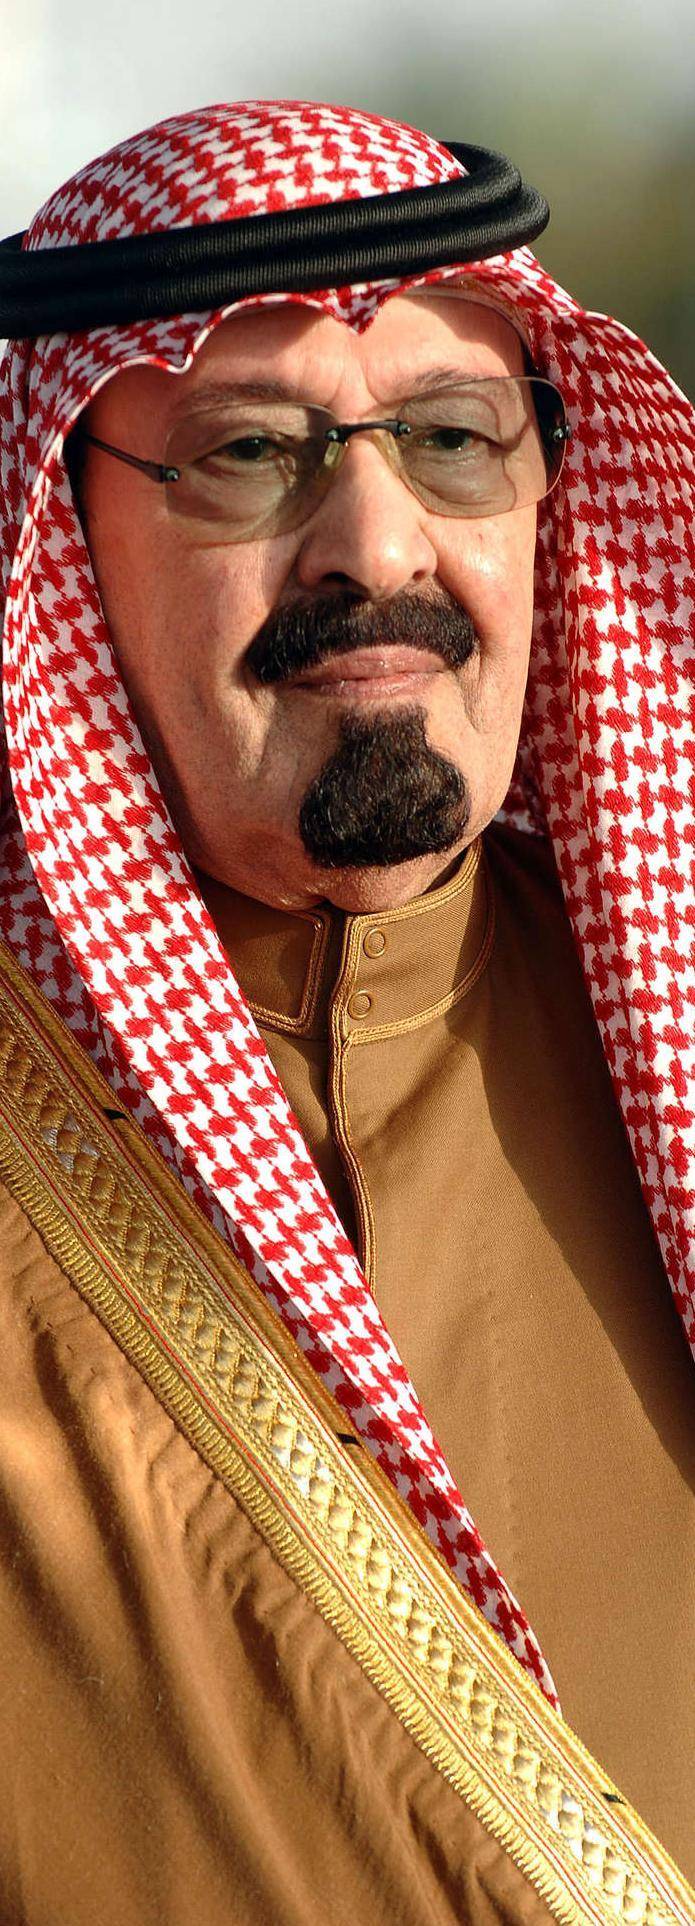 Addio al re Abdullah Ma l'Arabia non cambierà